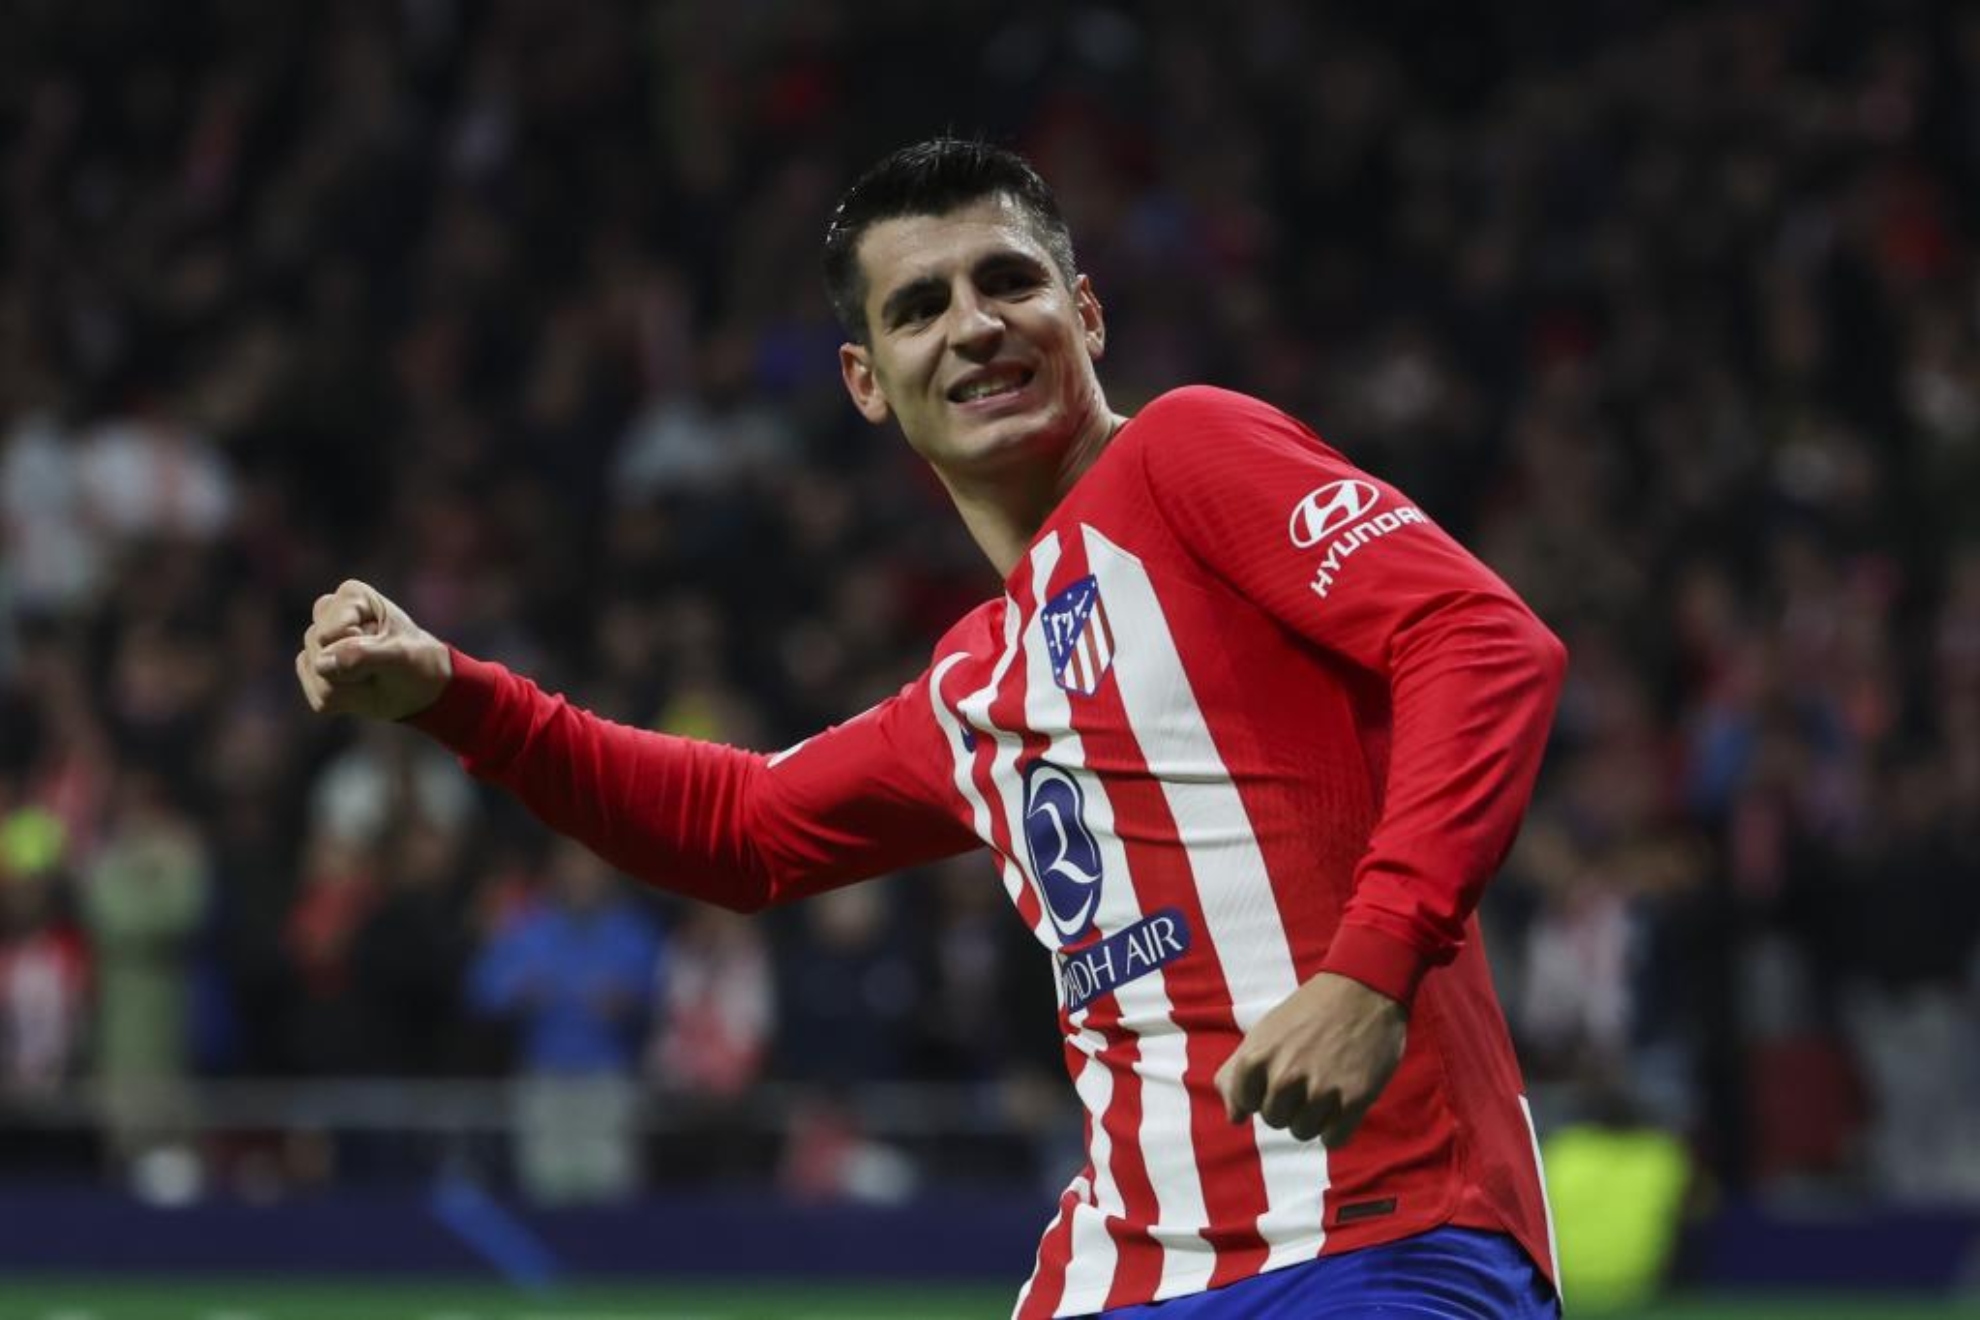 Morata celebra un gol con el Atlético, equipo con el que lleva 49 goles.